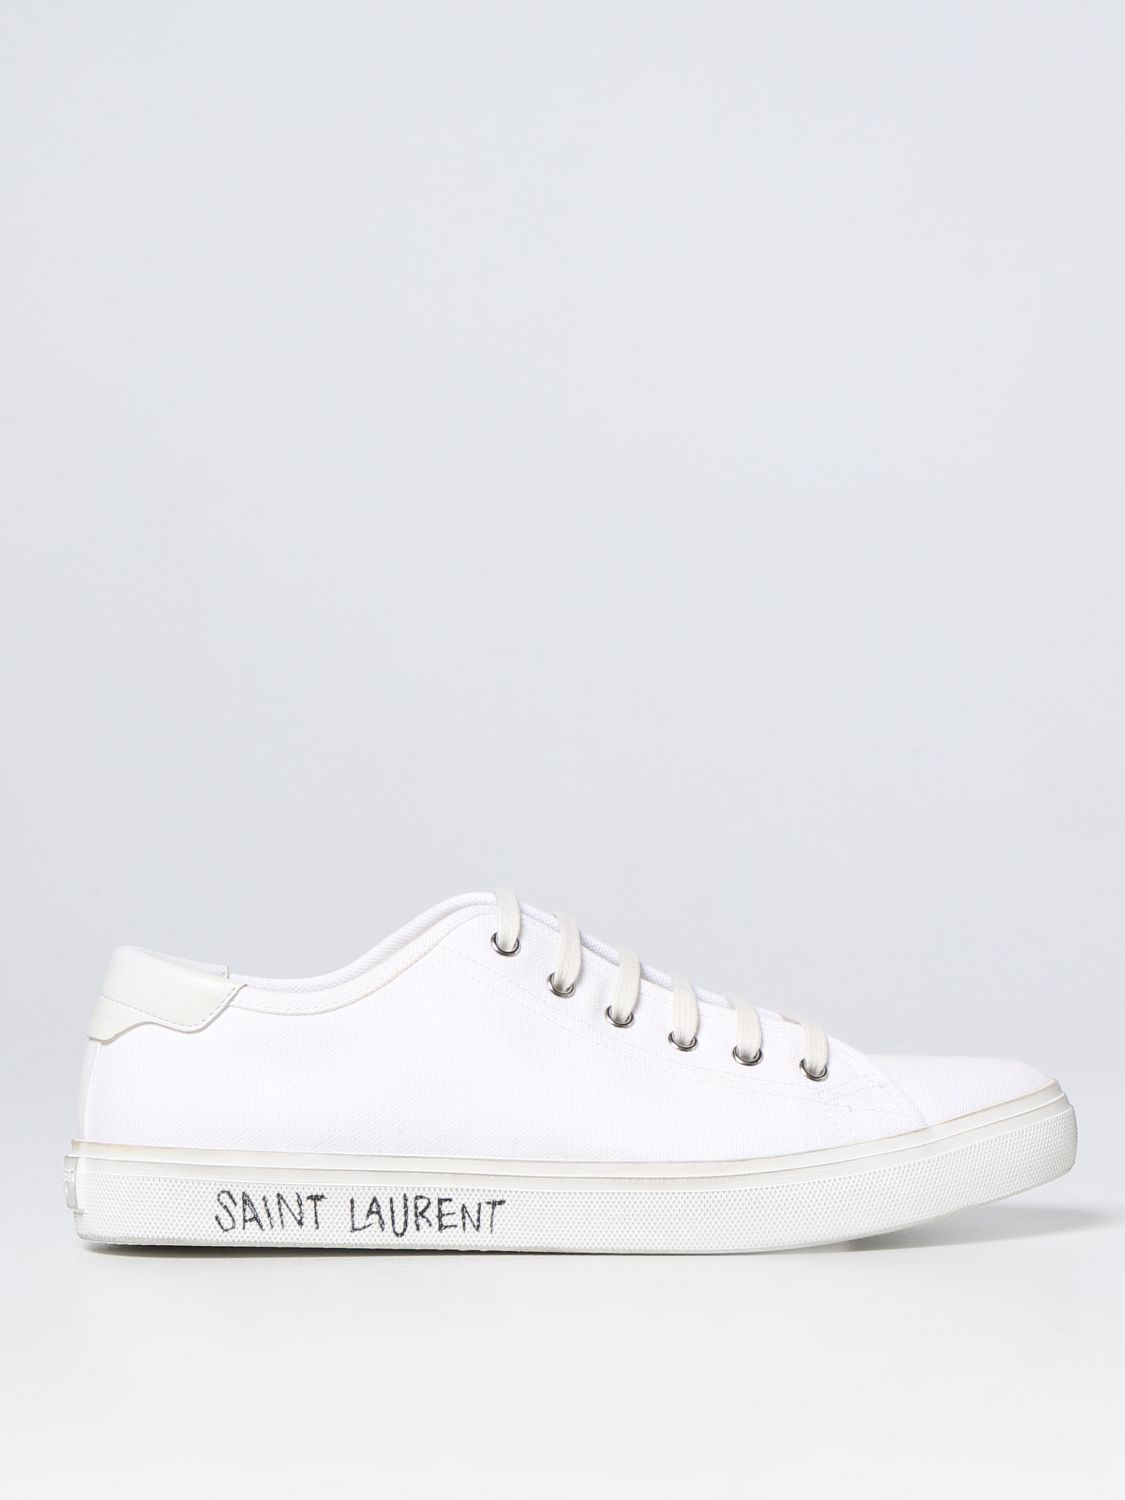 SAINT LAURENT 运动鞋 SAINT LAURENT 男士 颜色 白色,D87984001